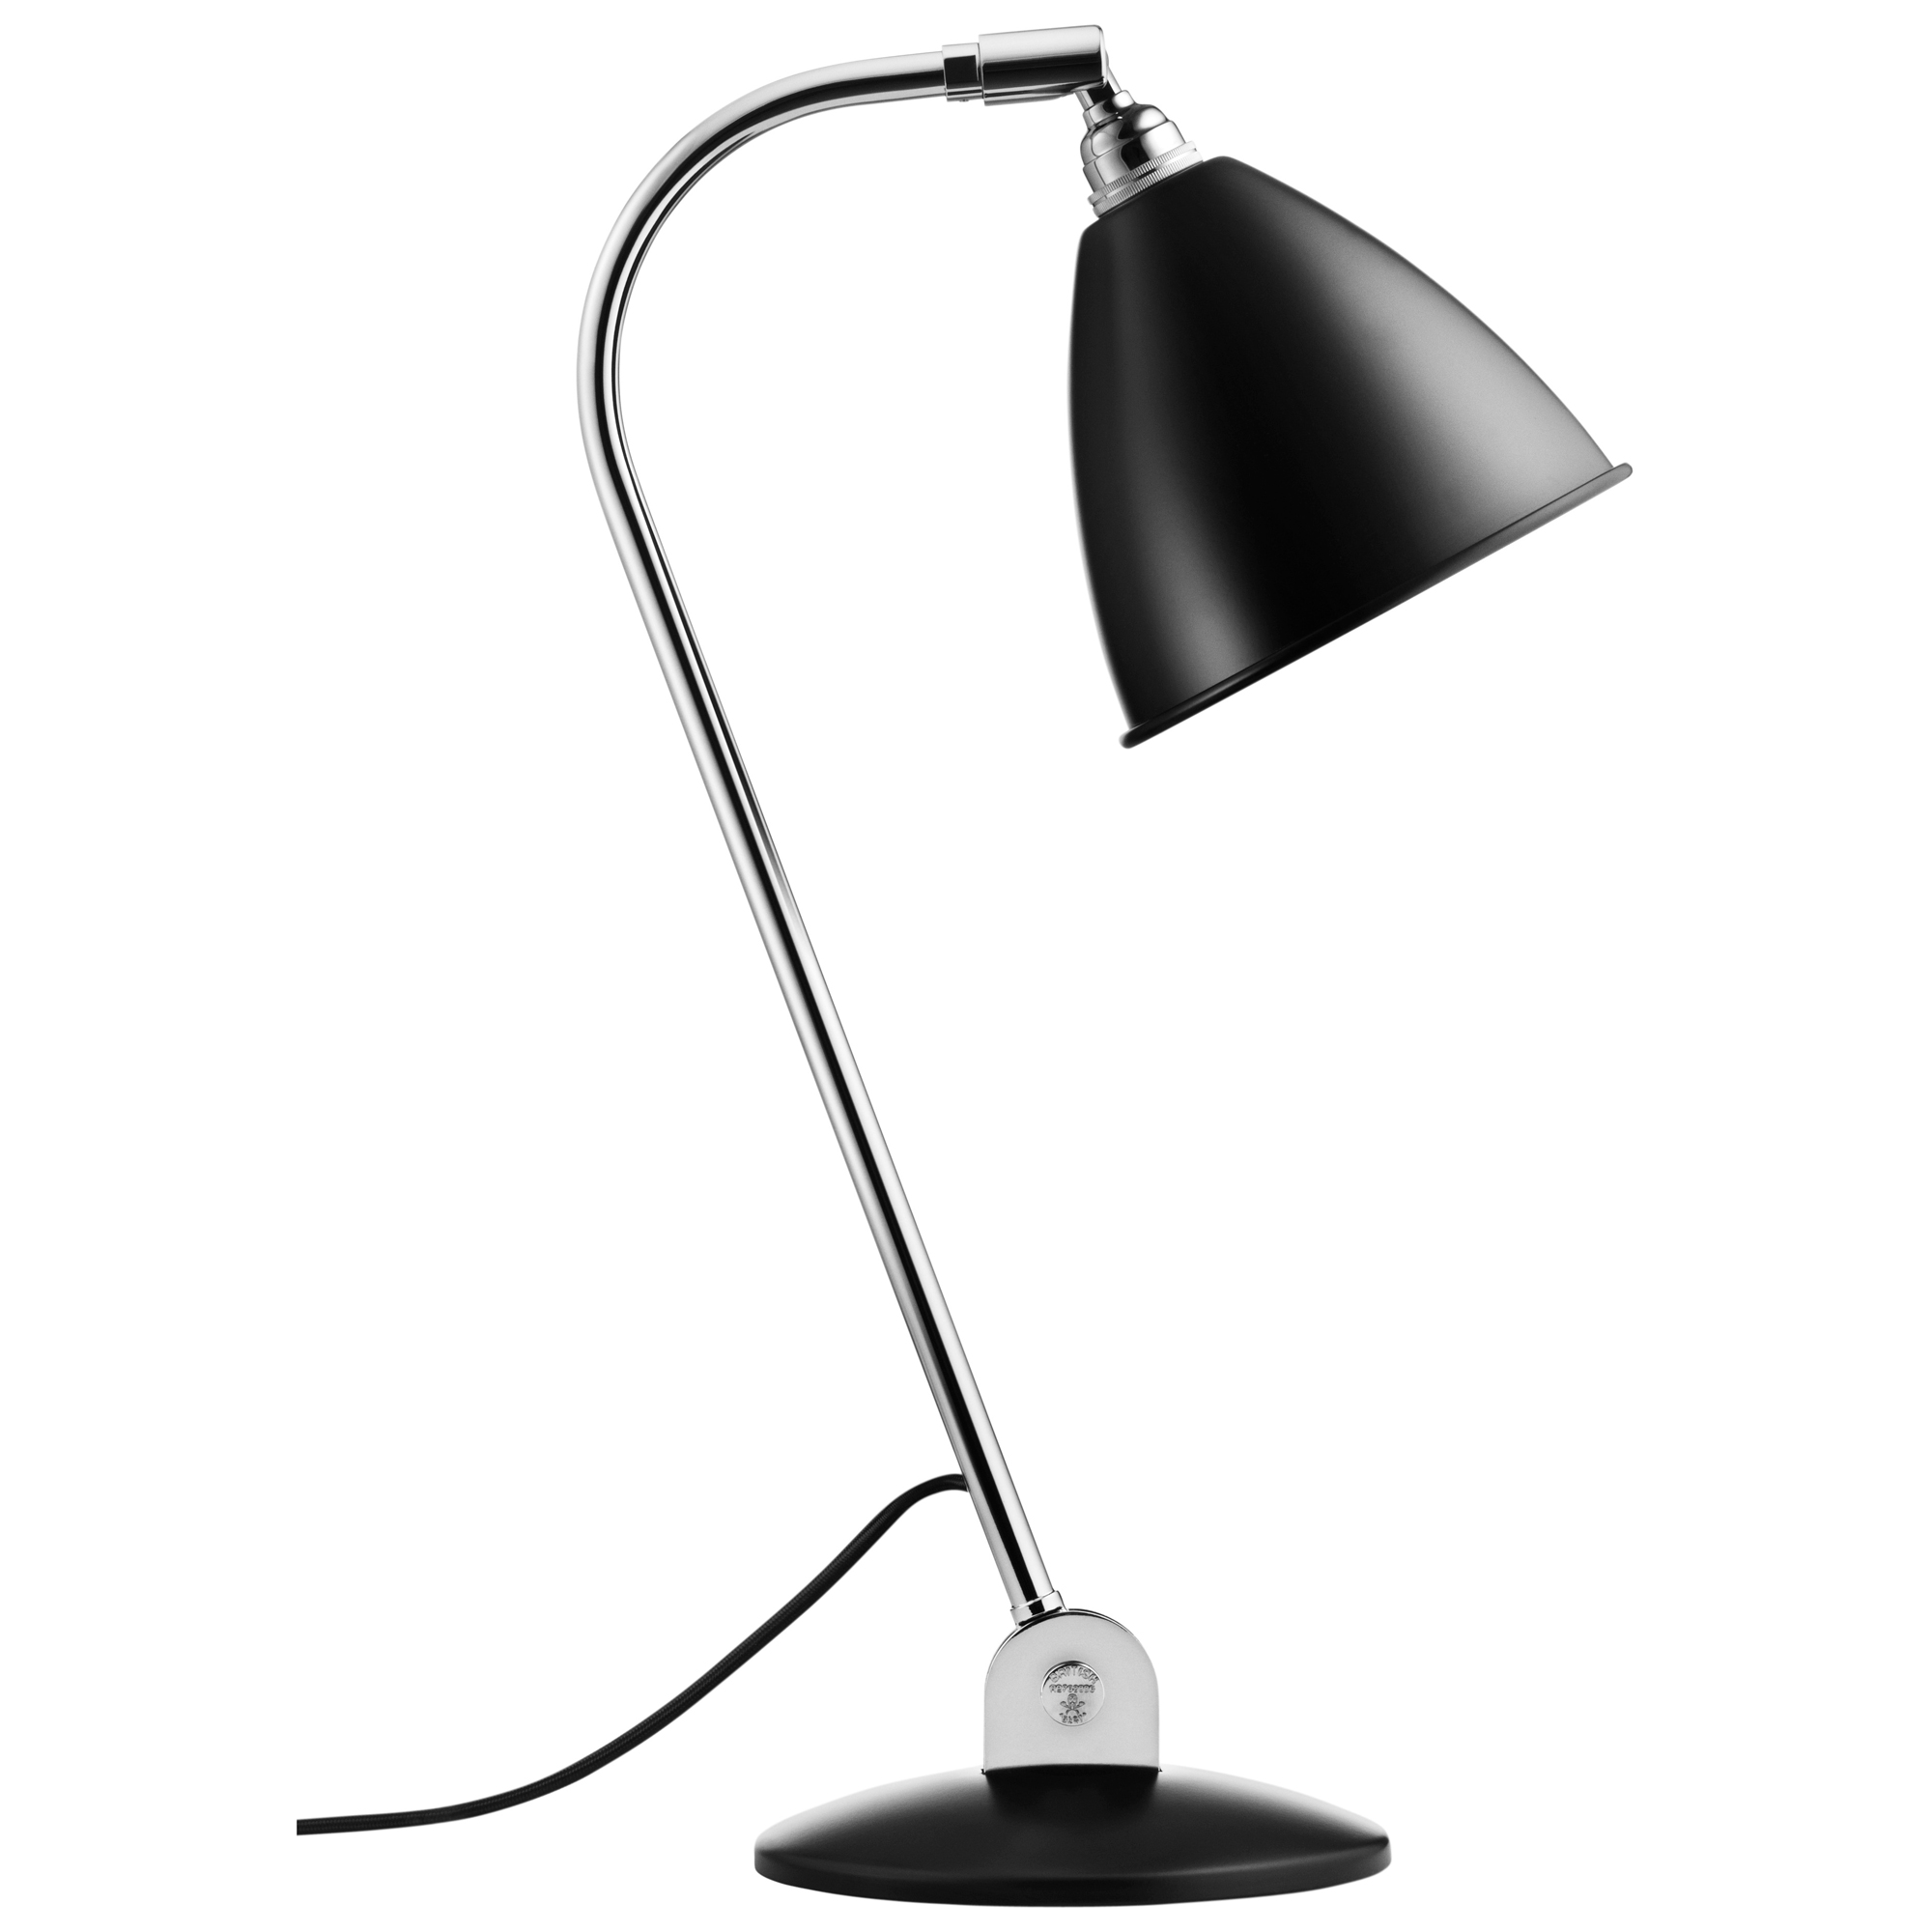 BL2 Desk Lamp by Gubi 10010018 | GUB382613